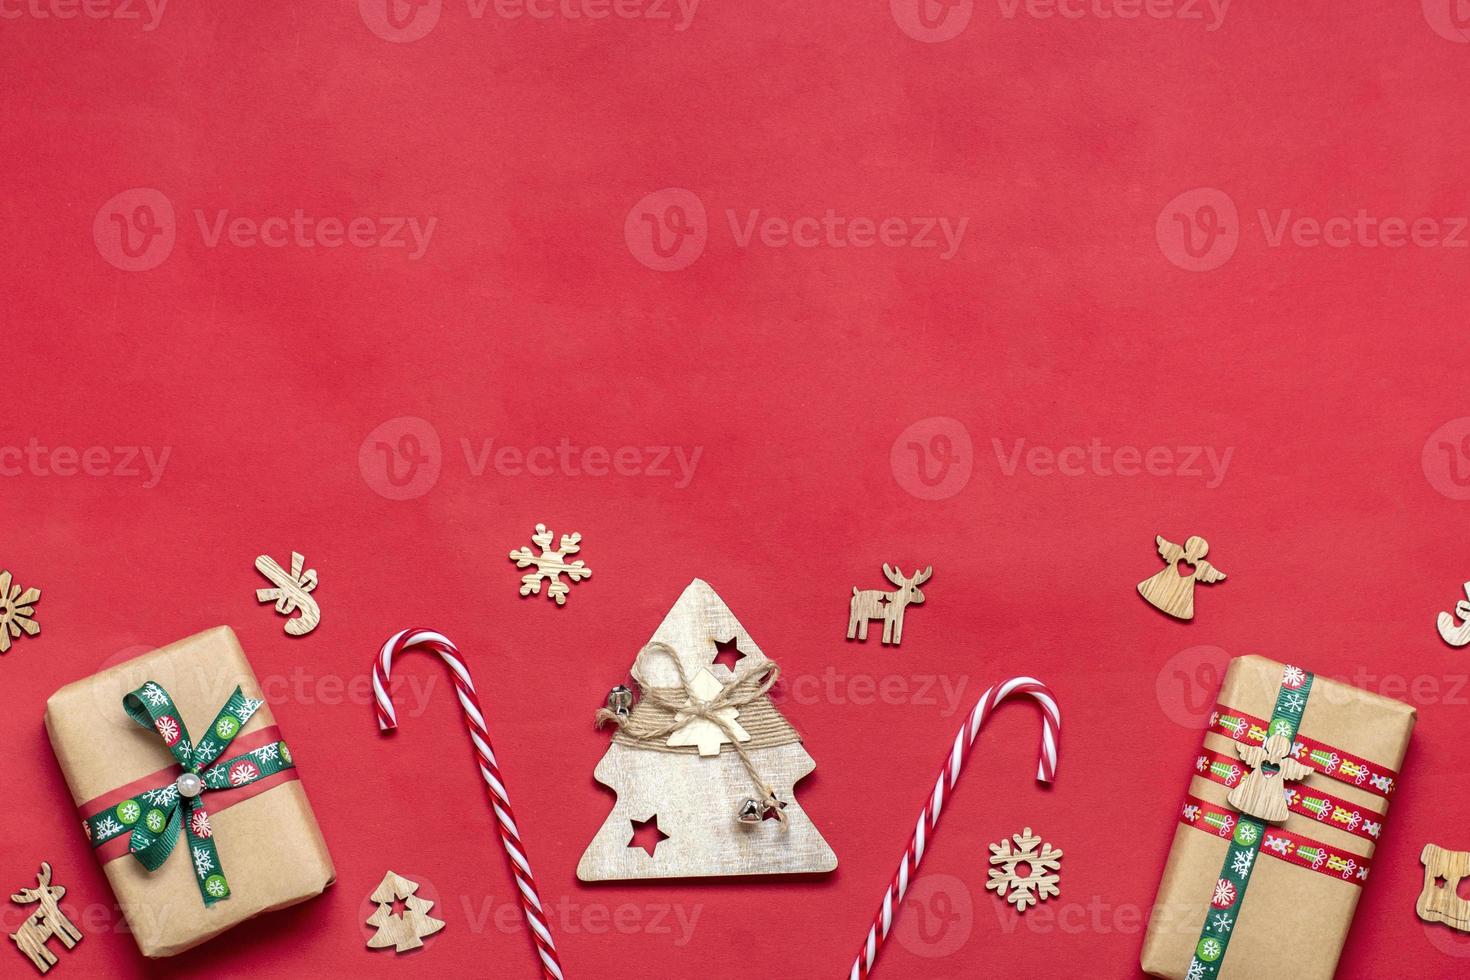 cajas de regalo rojas y verdes envueltas a mano decoradas con cintas, copos de nieve y números, adornos navideños y decoración en la mesa roja concepto de calendario de adviento de navidad vista superior tarjeta de vacaciones plana foto